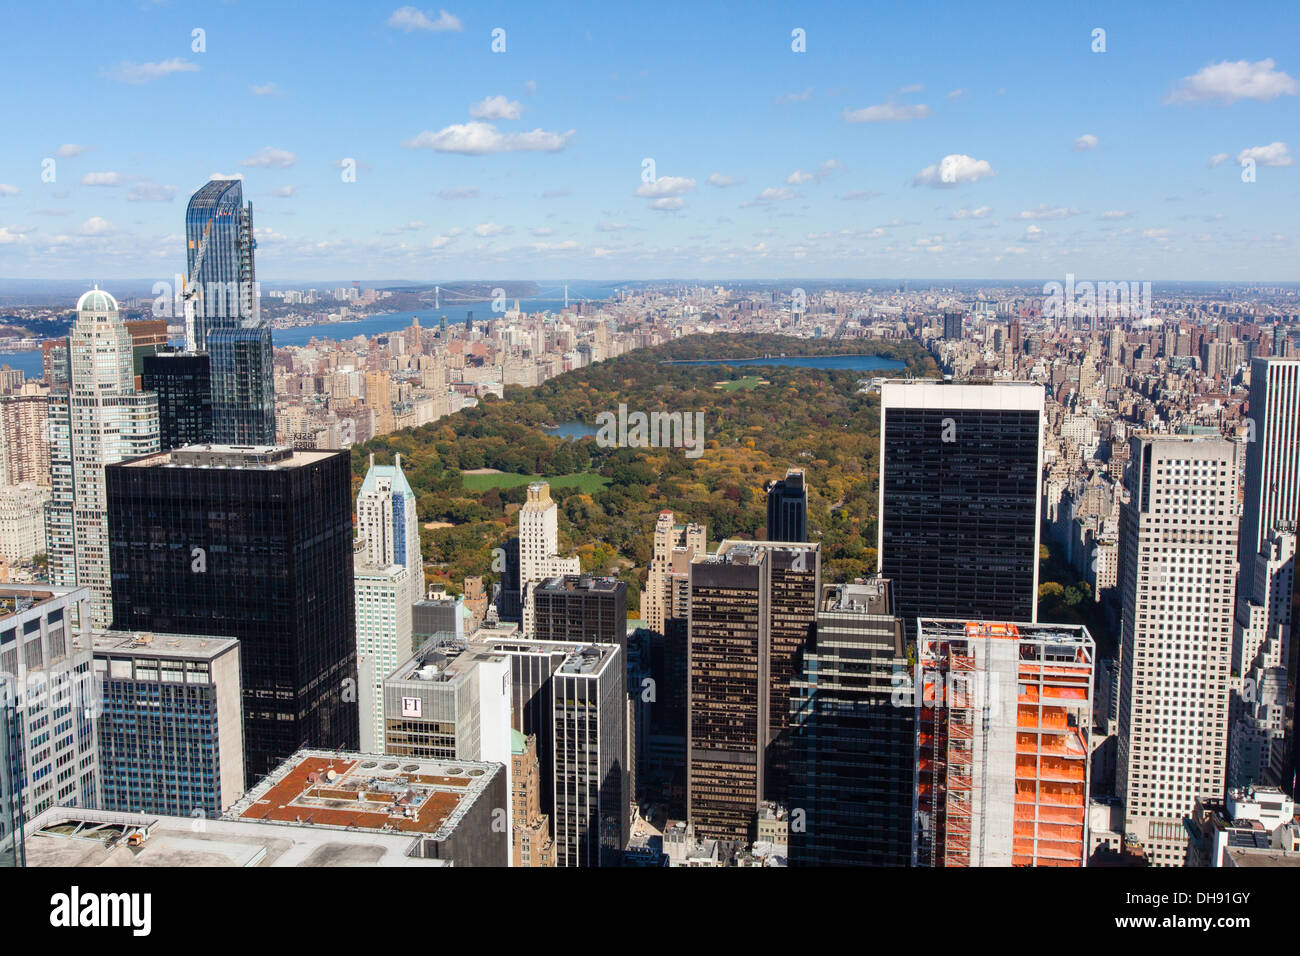 Aussicht von der Spitze des Felsens mit Blick auf den Central Park, Rockefeller Center Aussichtsplattform, New York City, New York, USA, USA Stockfoto